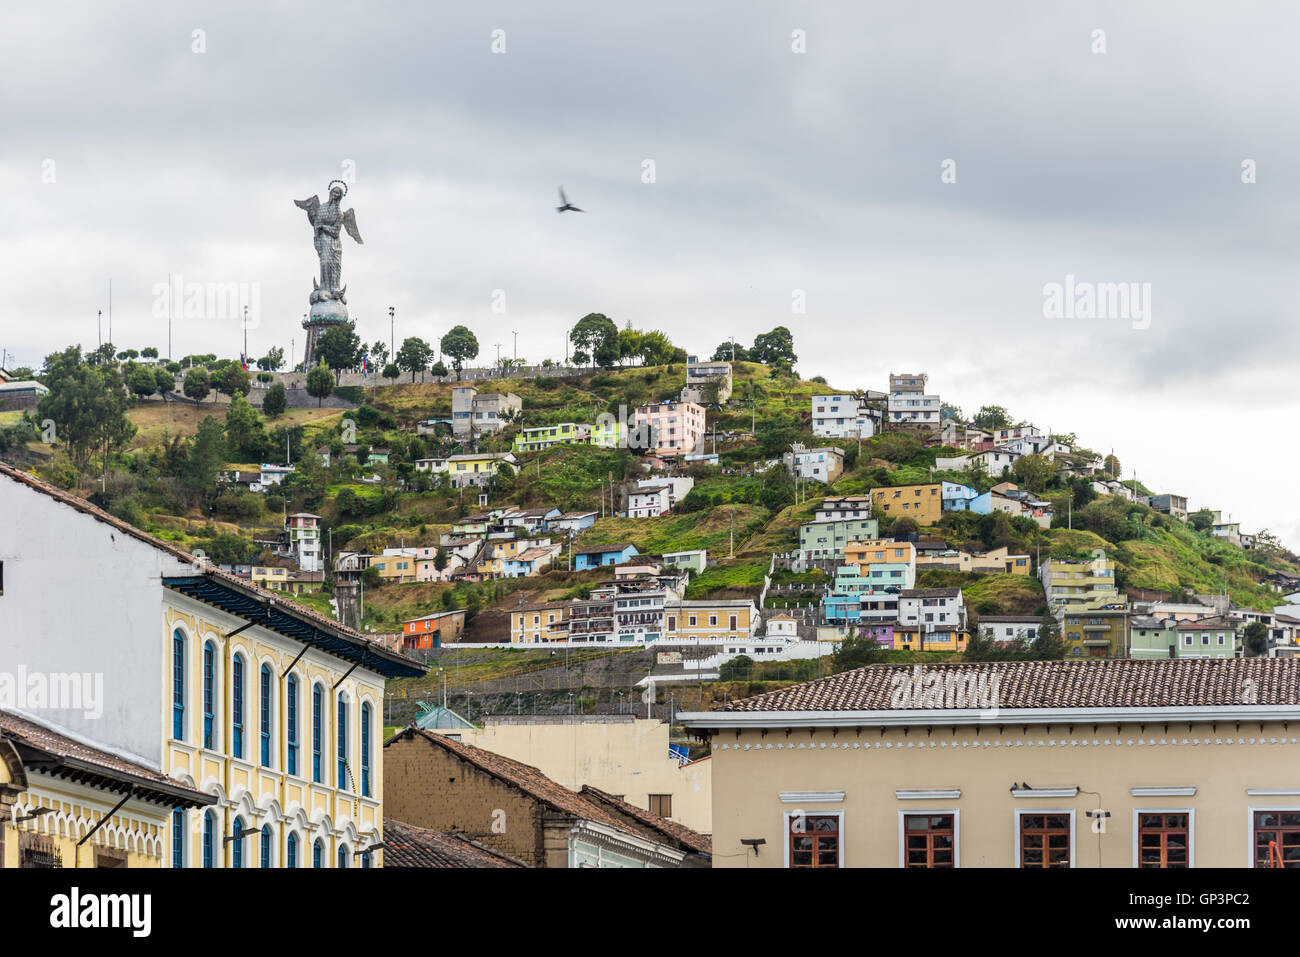 Maisons colorées sur la colline où Vierge Marie statue debout. Quito, Equateur. Banque D'Images